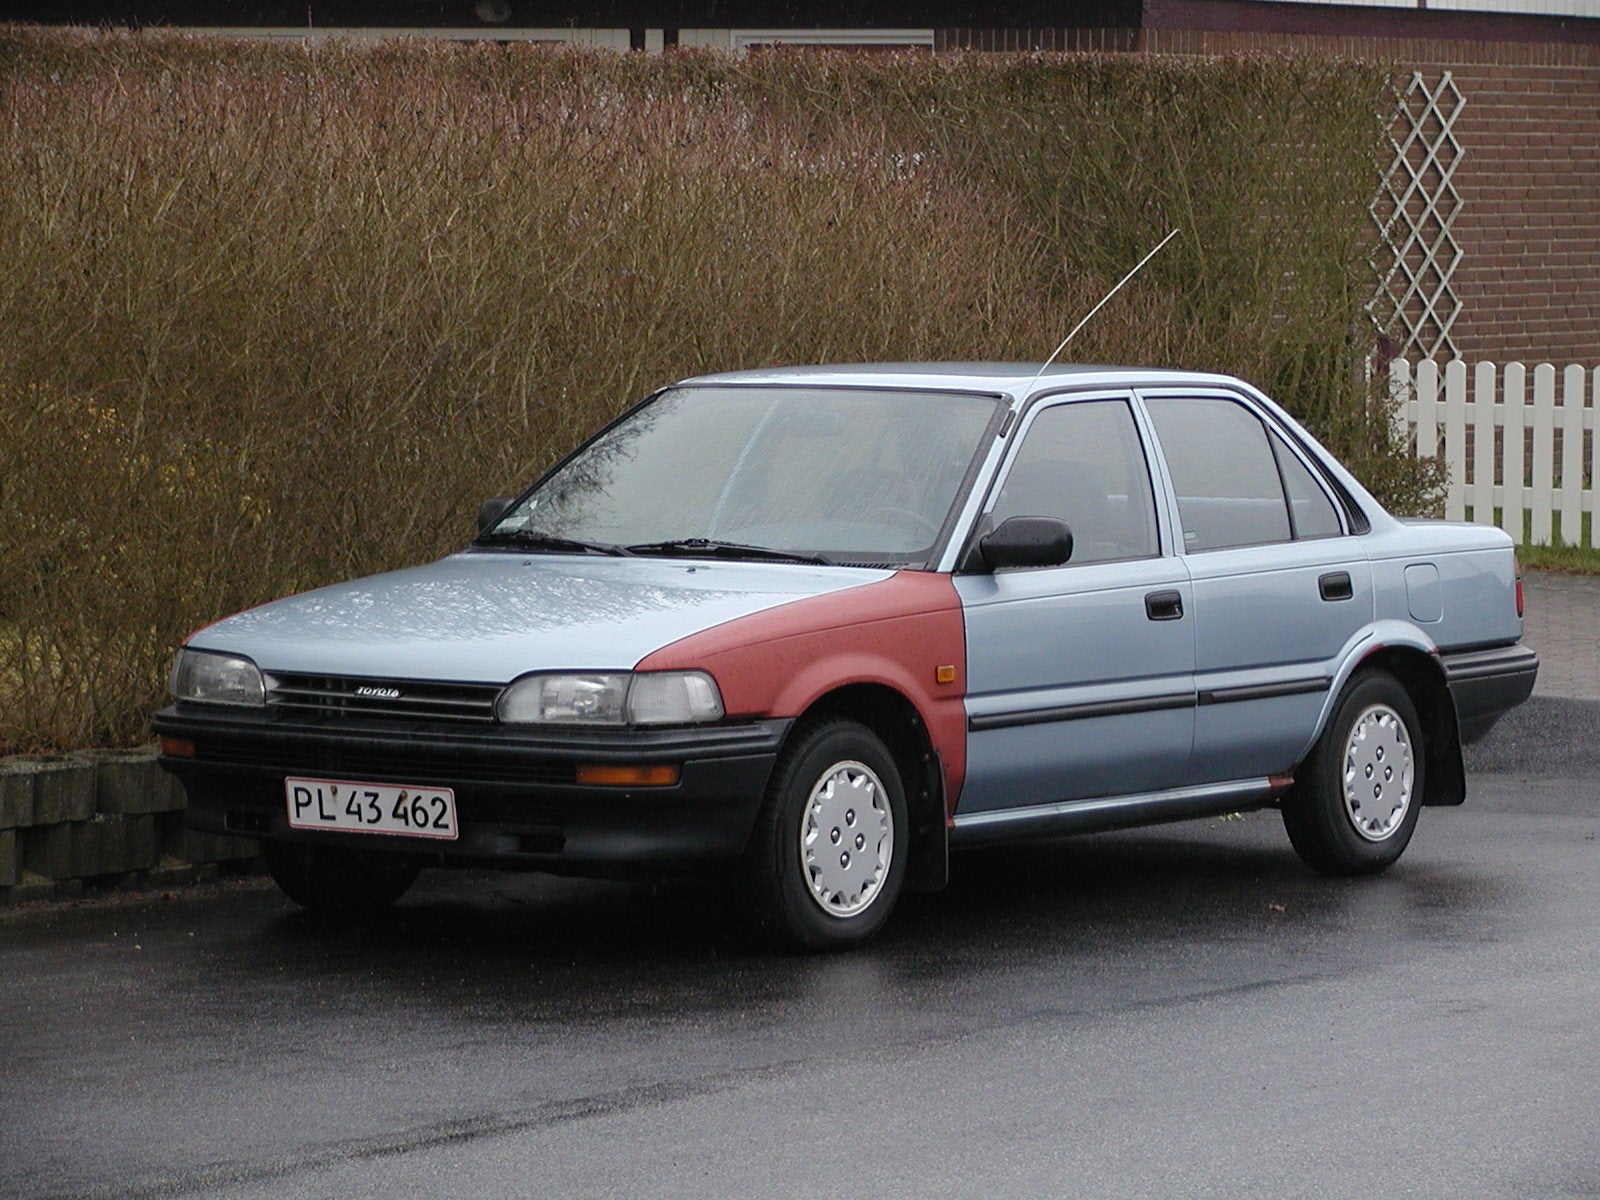 1989 Corolla picture toyota